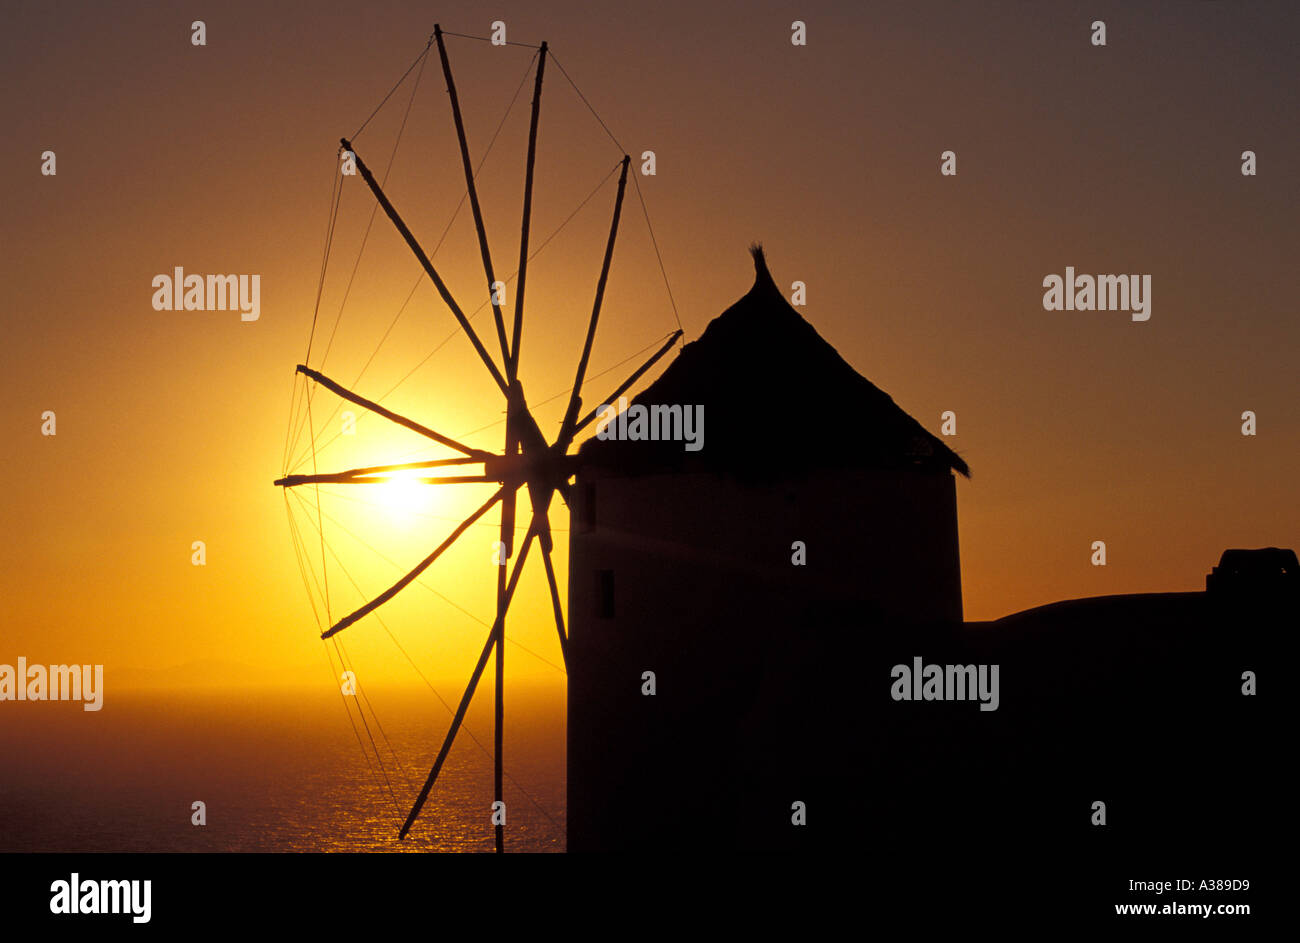 Windmill on the Santorini Island at Sunset, Greece Stock Photo